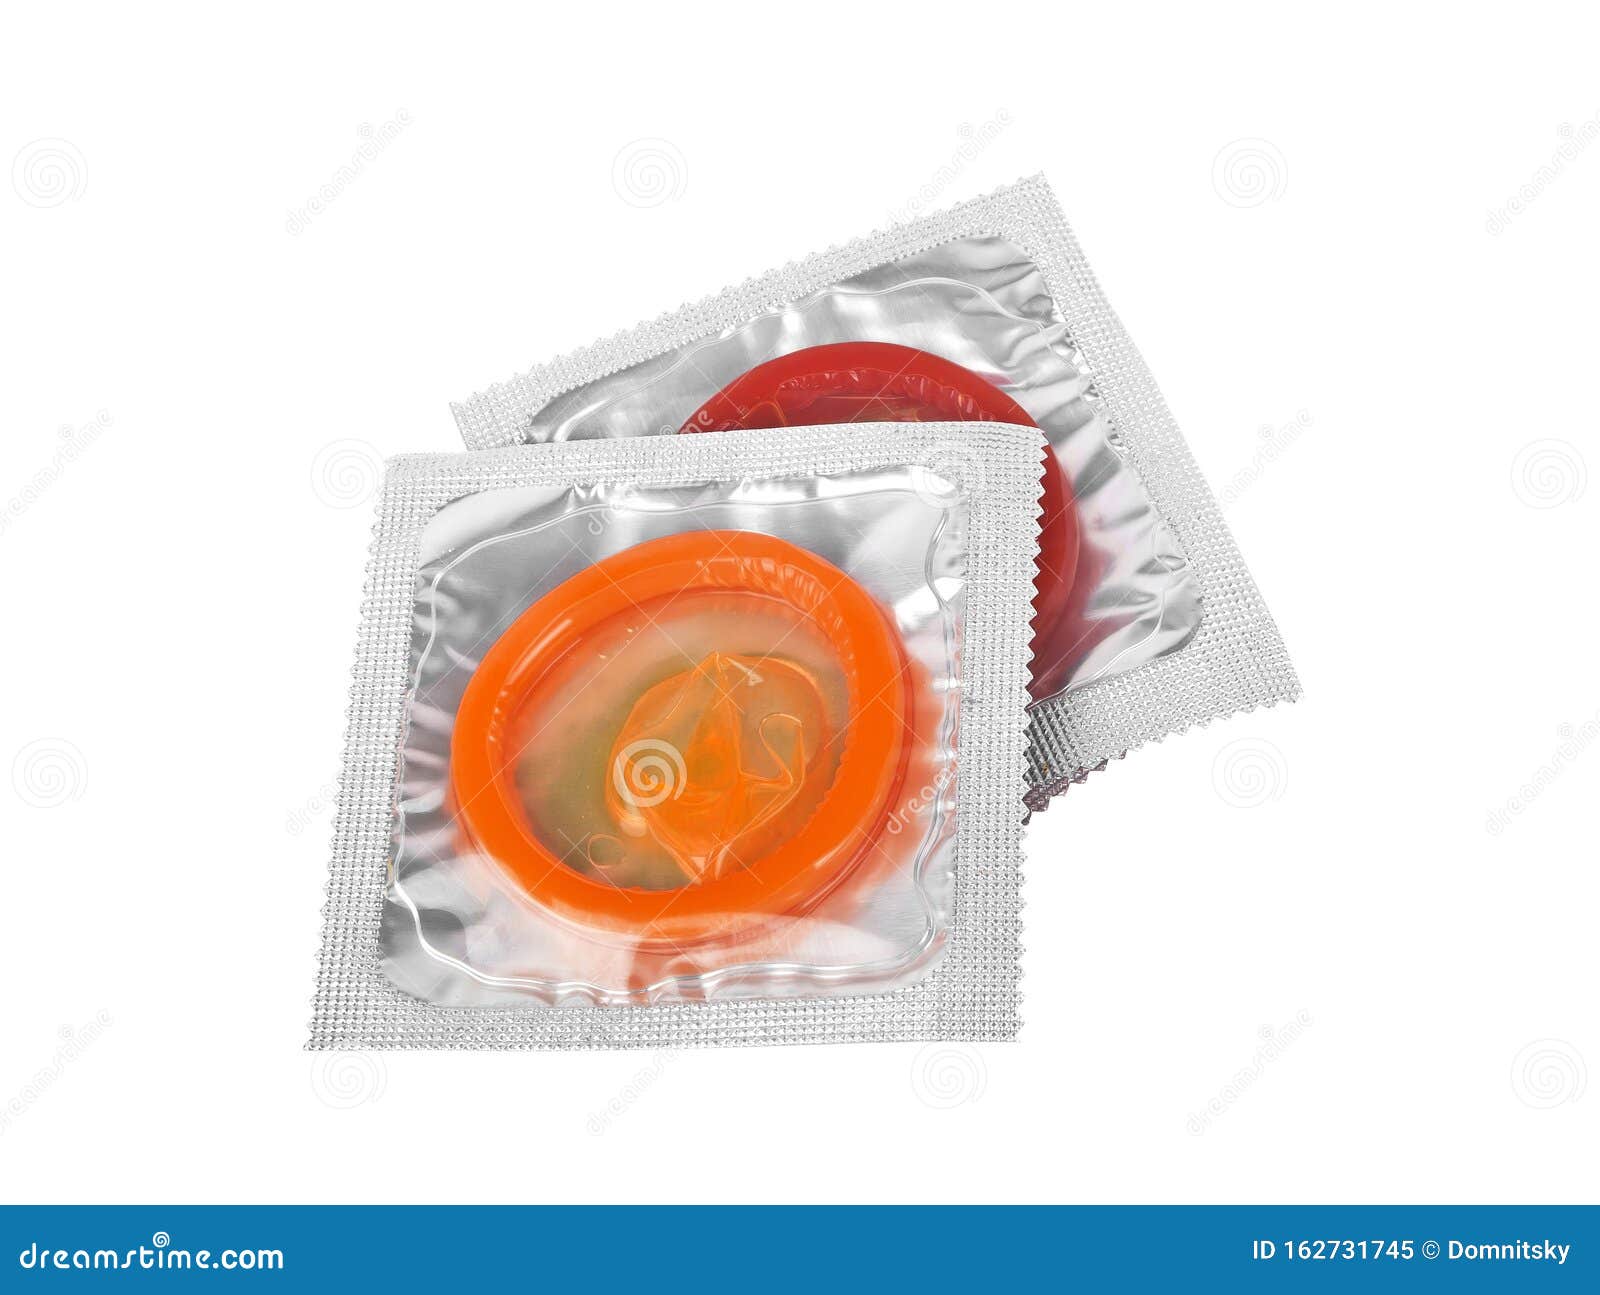 高大上的套套评测_安全避孕_什么值得买